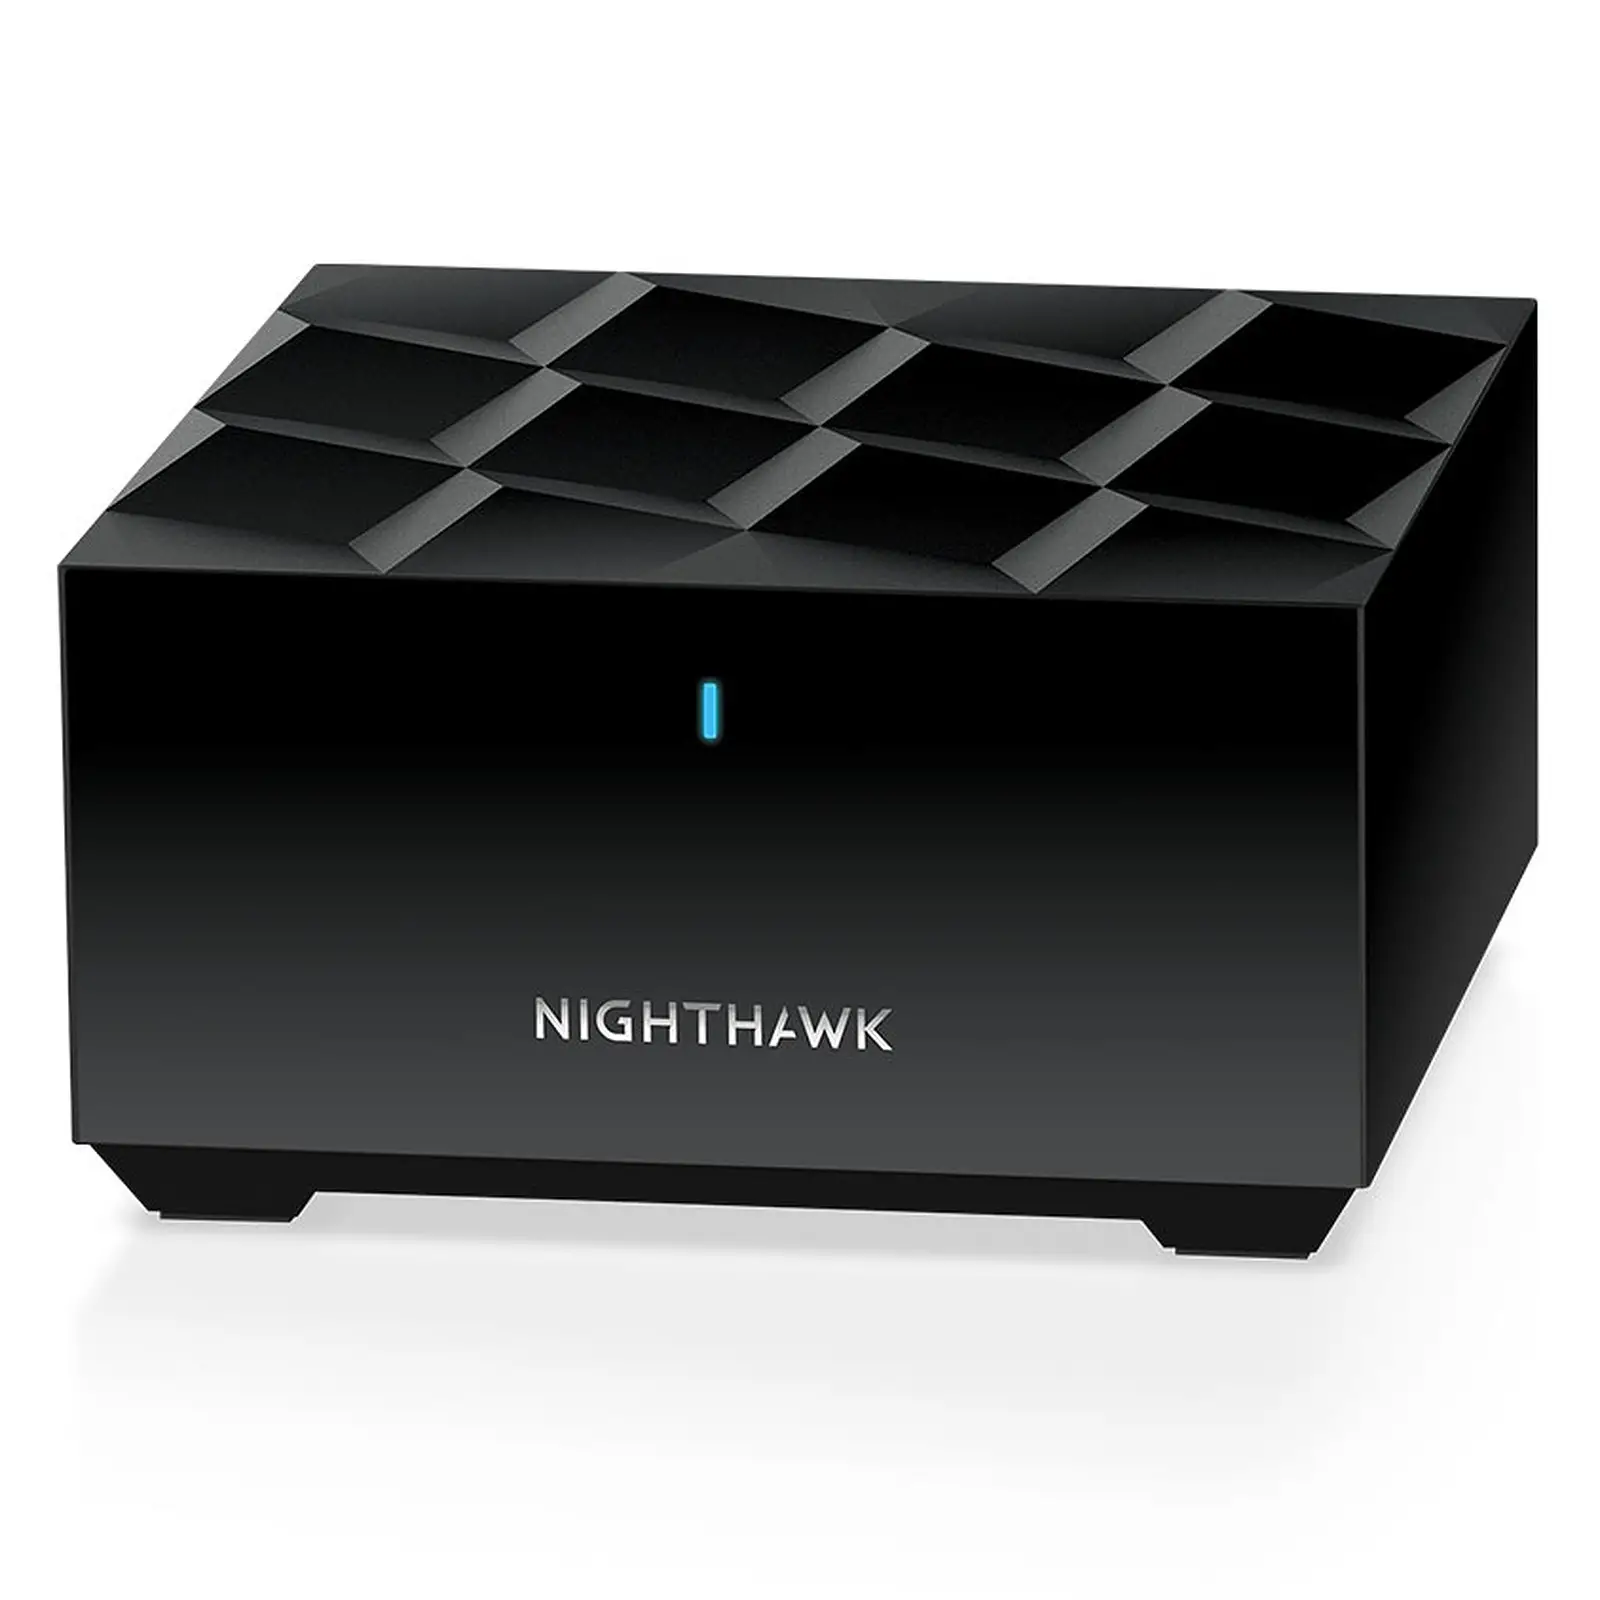 O Netgear nighthawk mesh wifi 6 é apresentado numa cor preta invulgar para routers mesh.